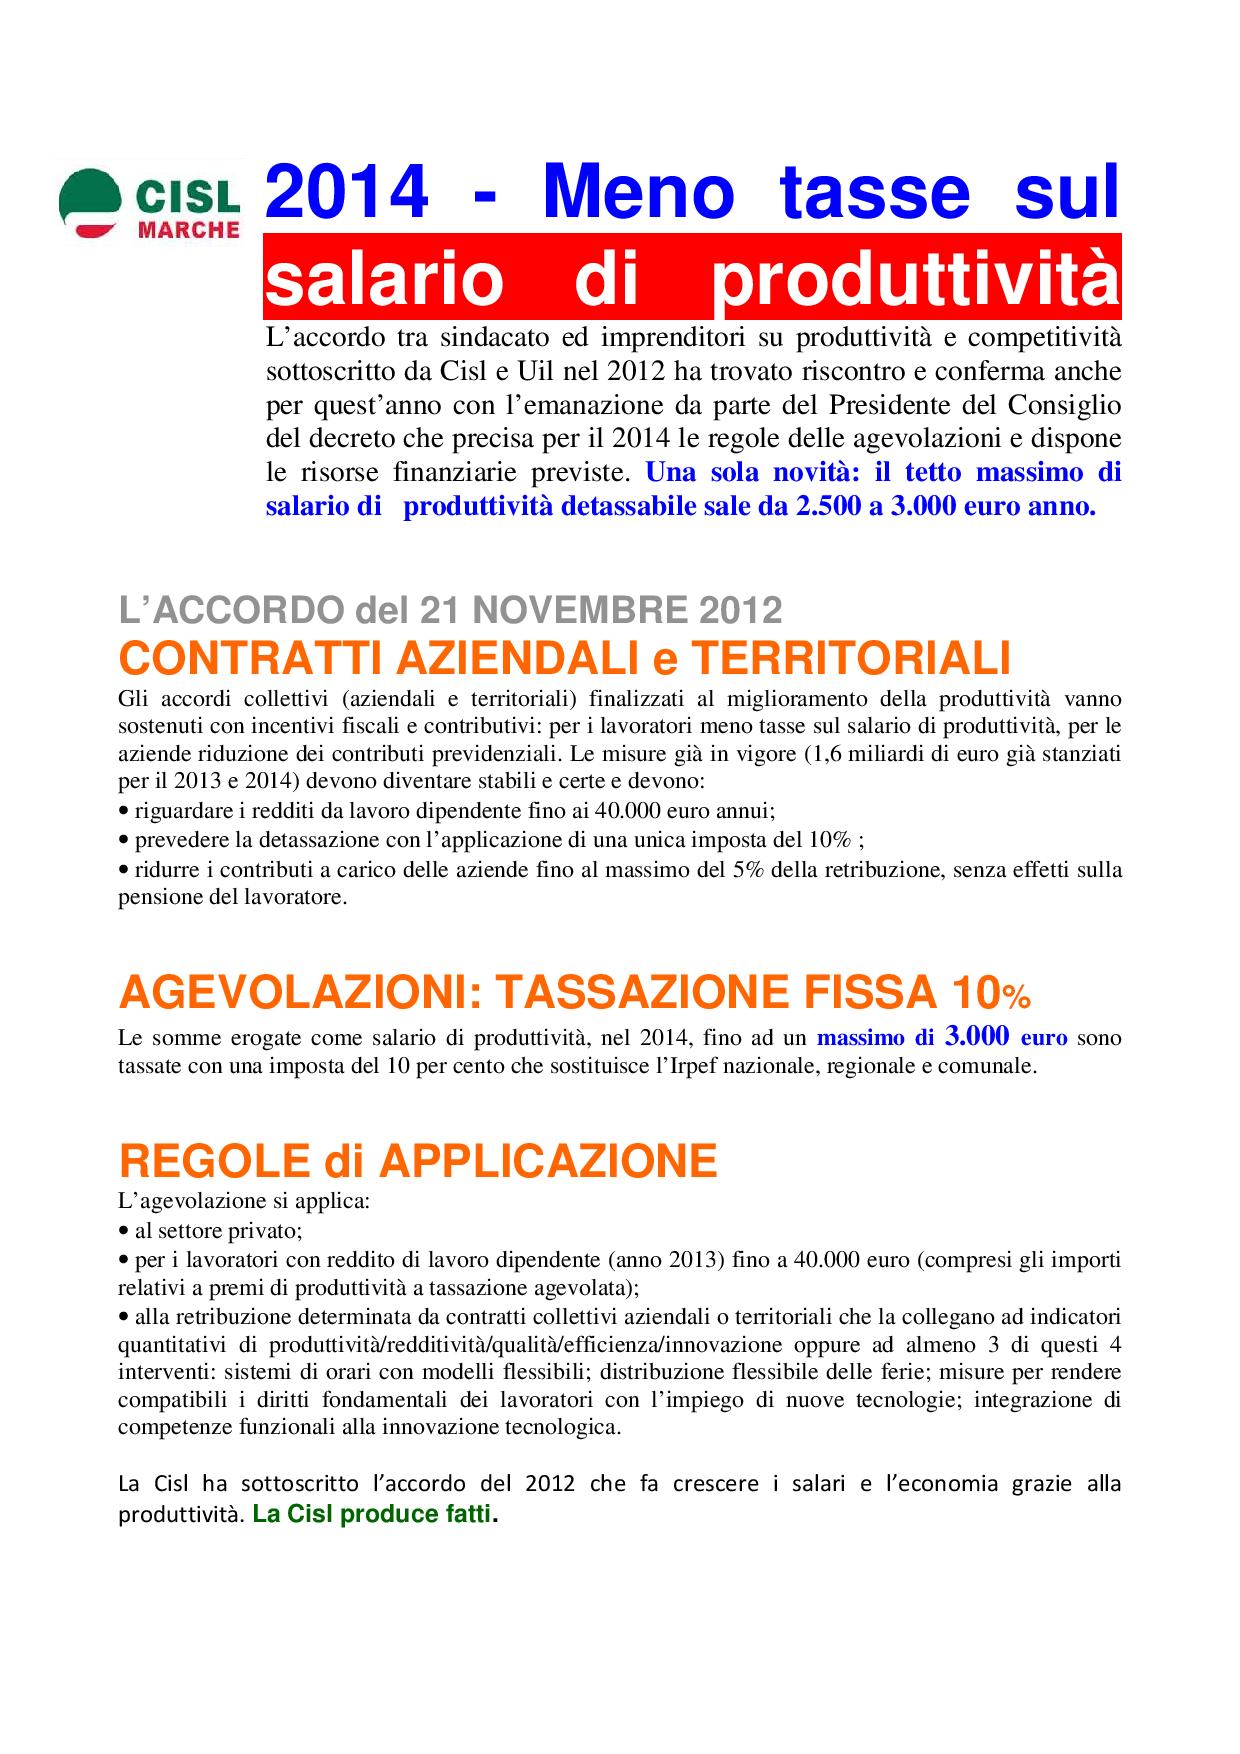 Volantino produttività _regole-page-001